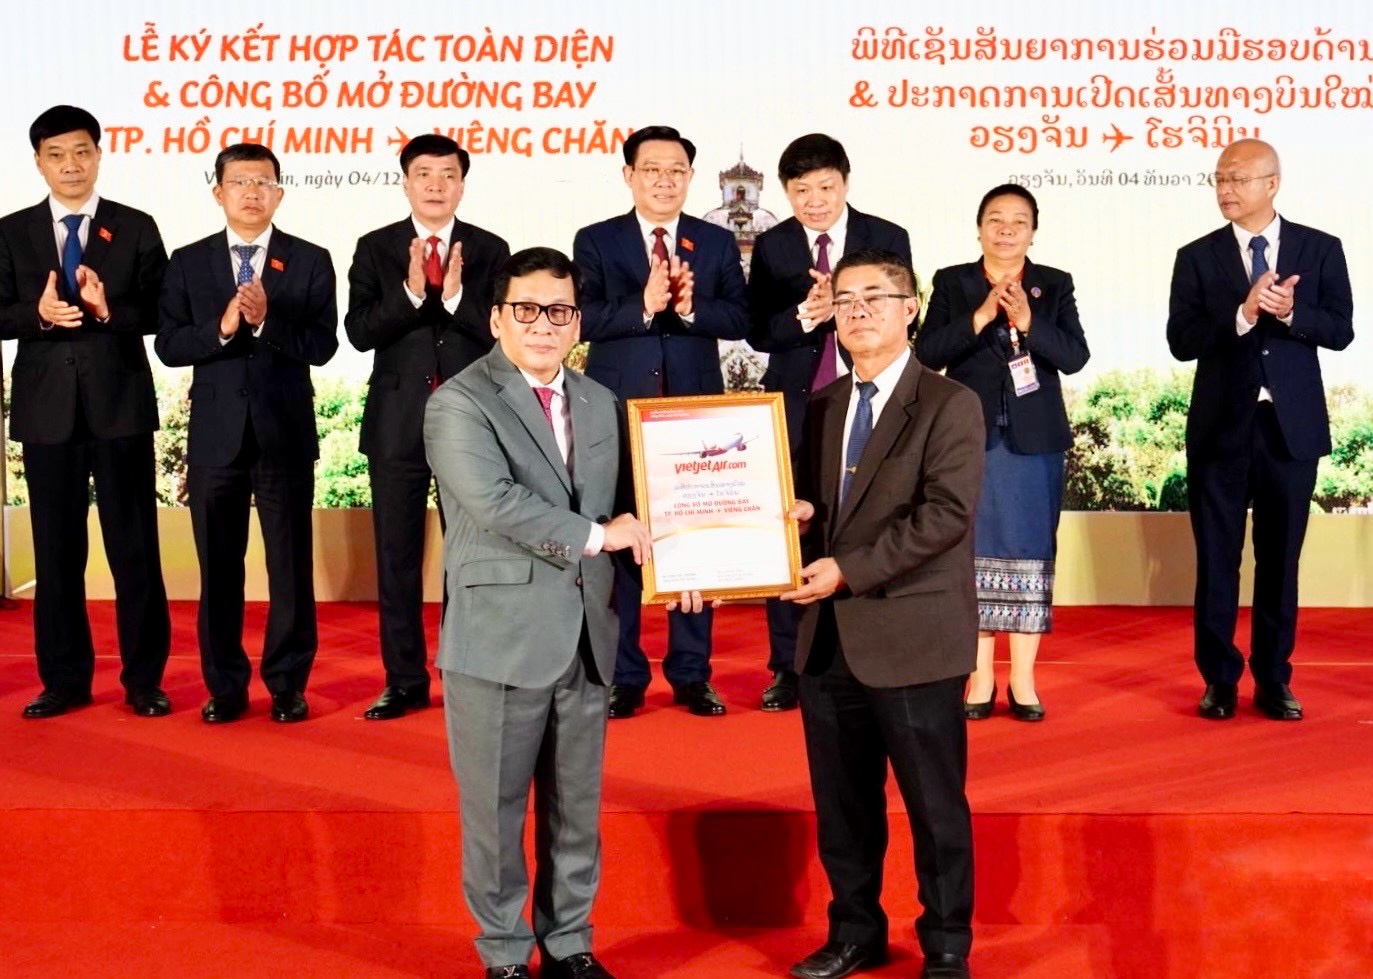 Vietjet hợp tác toàn diện với Lao Airlines, mở đường bay TP.HCM - Viêng Chăn - Ảnh 4.